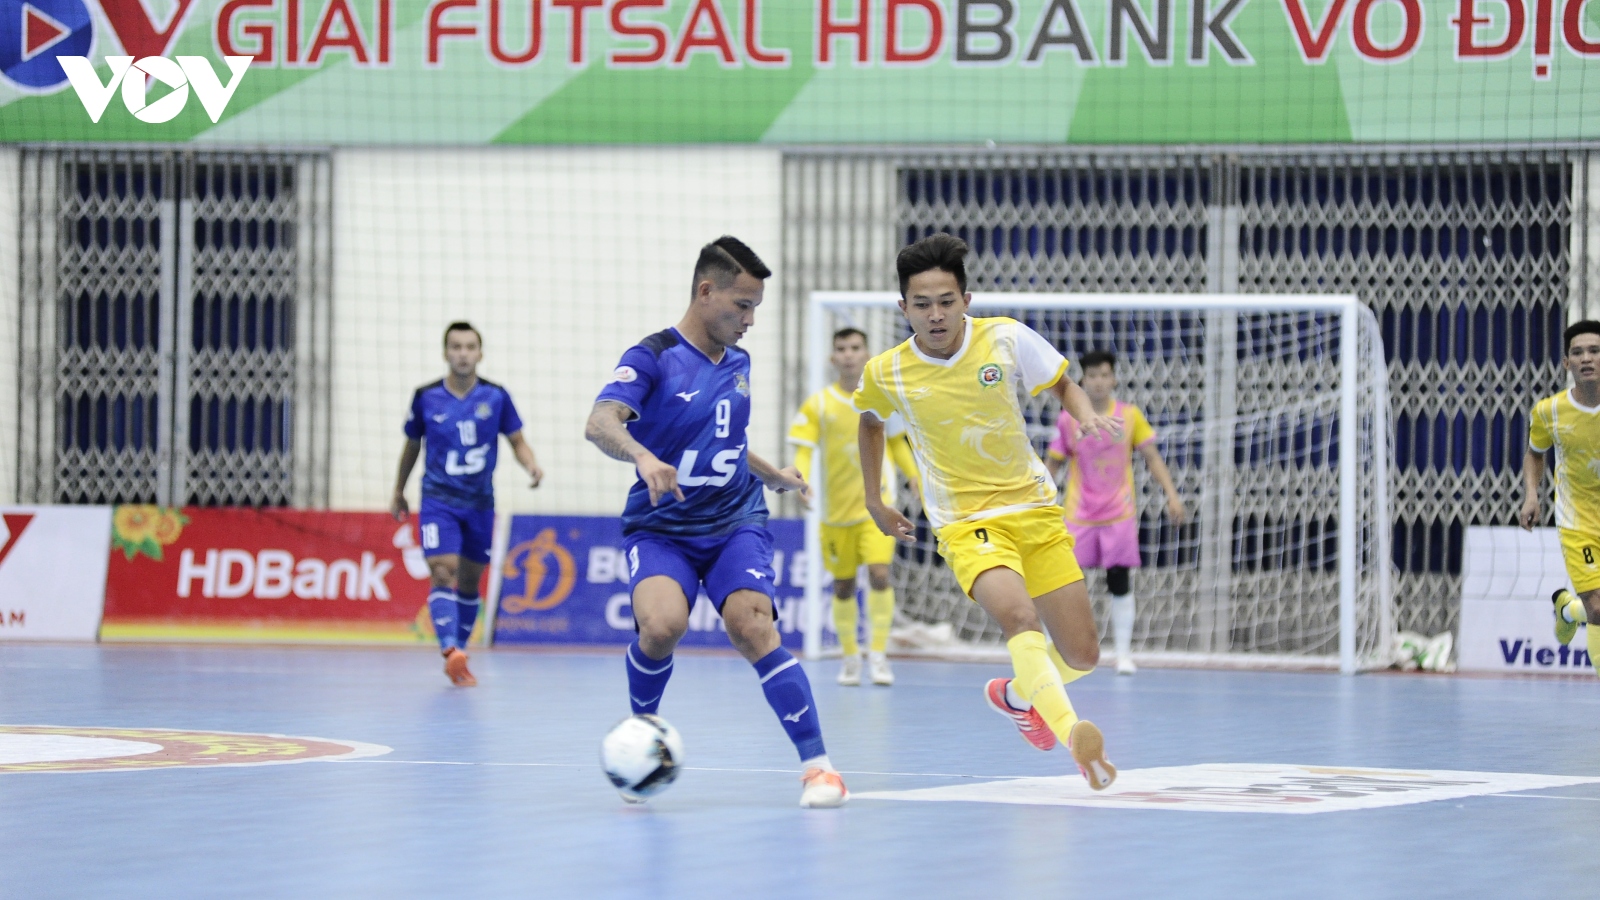 Giải Futsal HDBank VĐQG 2022: Thái Sơn Nam tiếp tục mất điểm